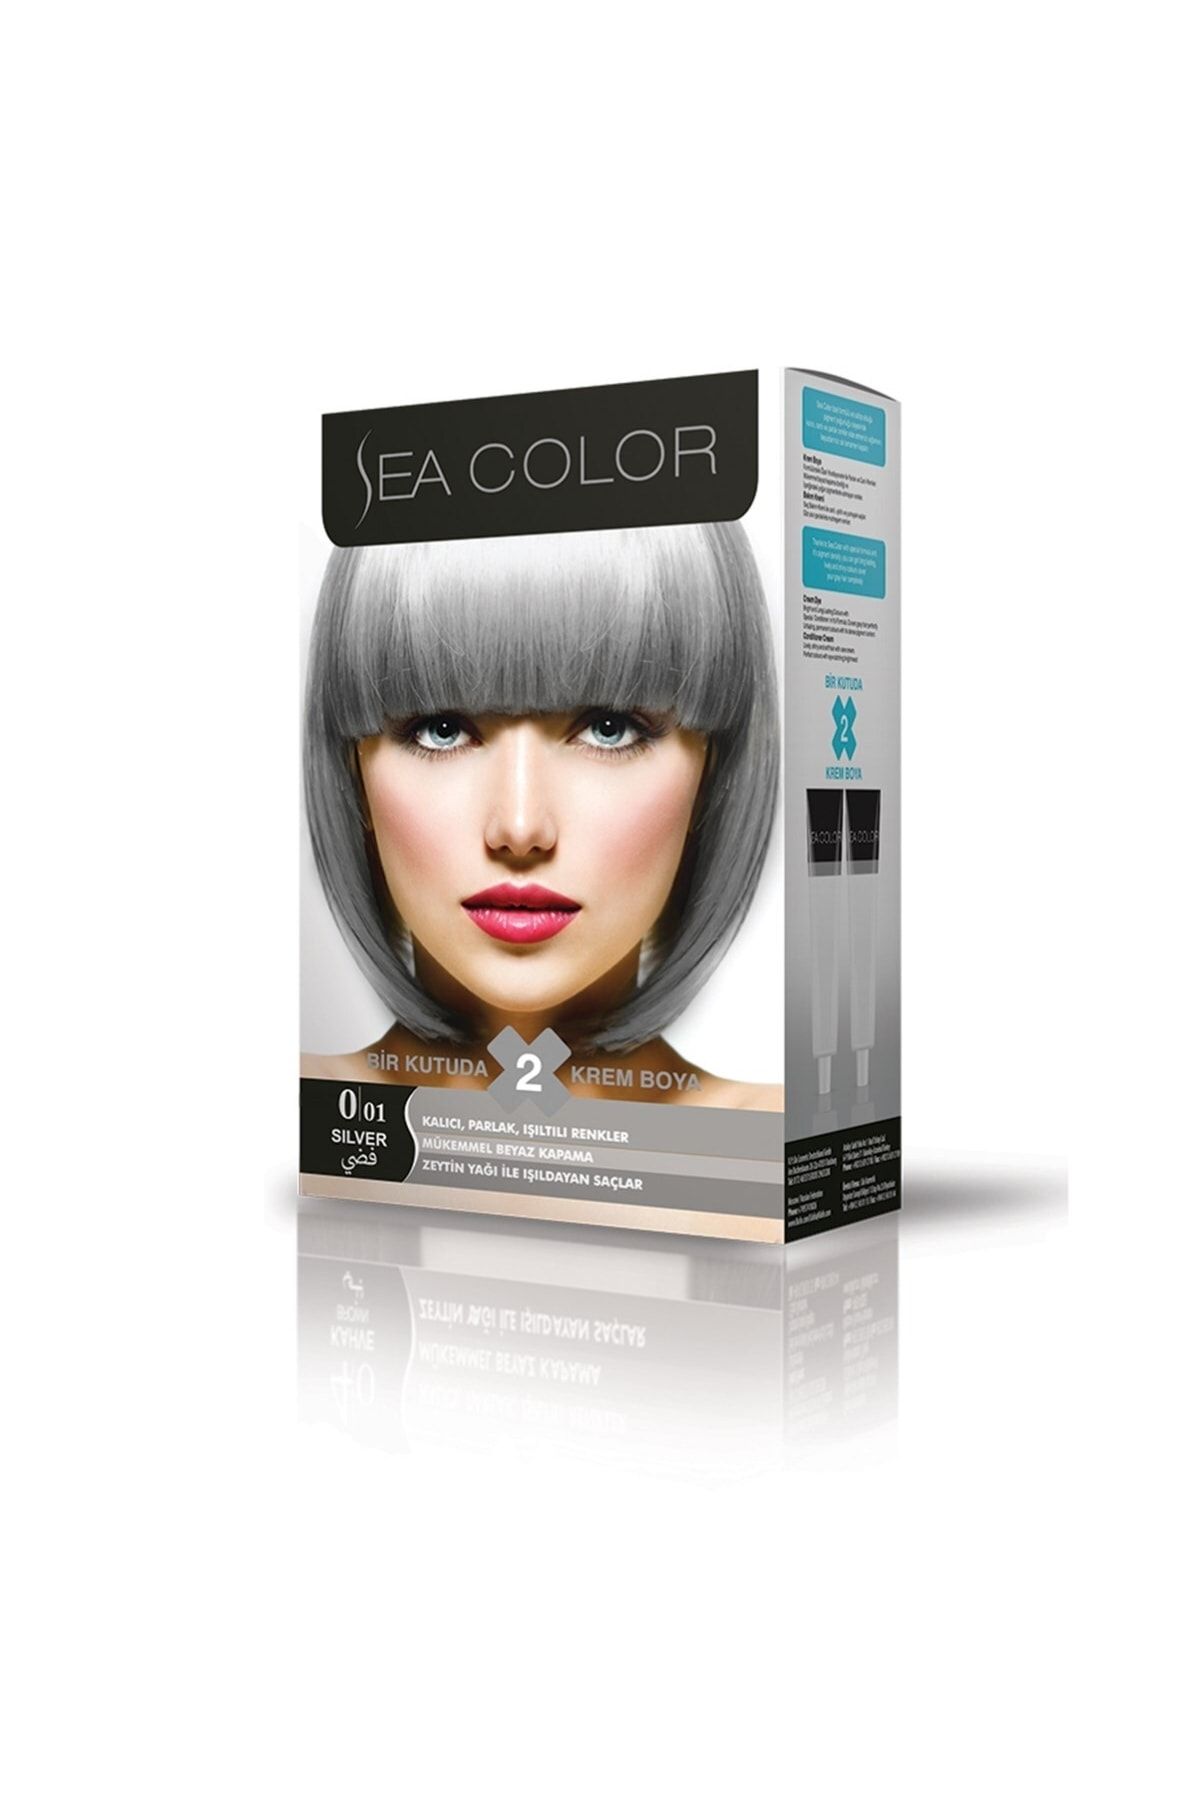 Sea Color Marka: Set Saç Boyası Füme Gri 0.01 Kategori: Saç Boyası